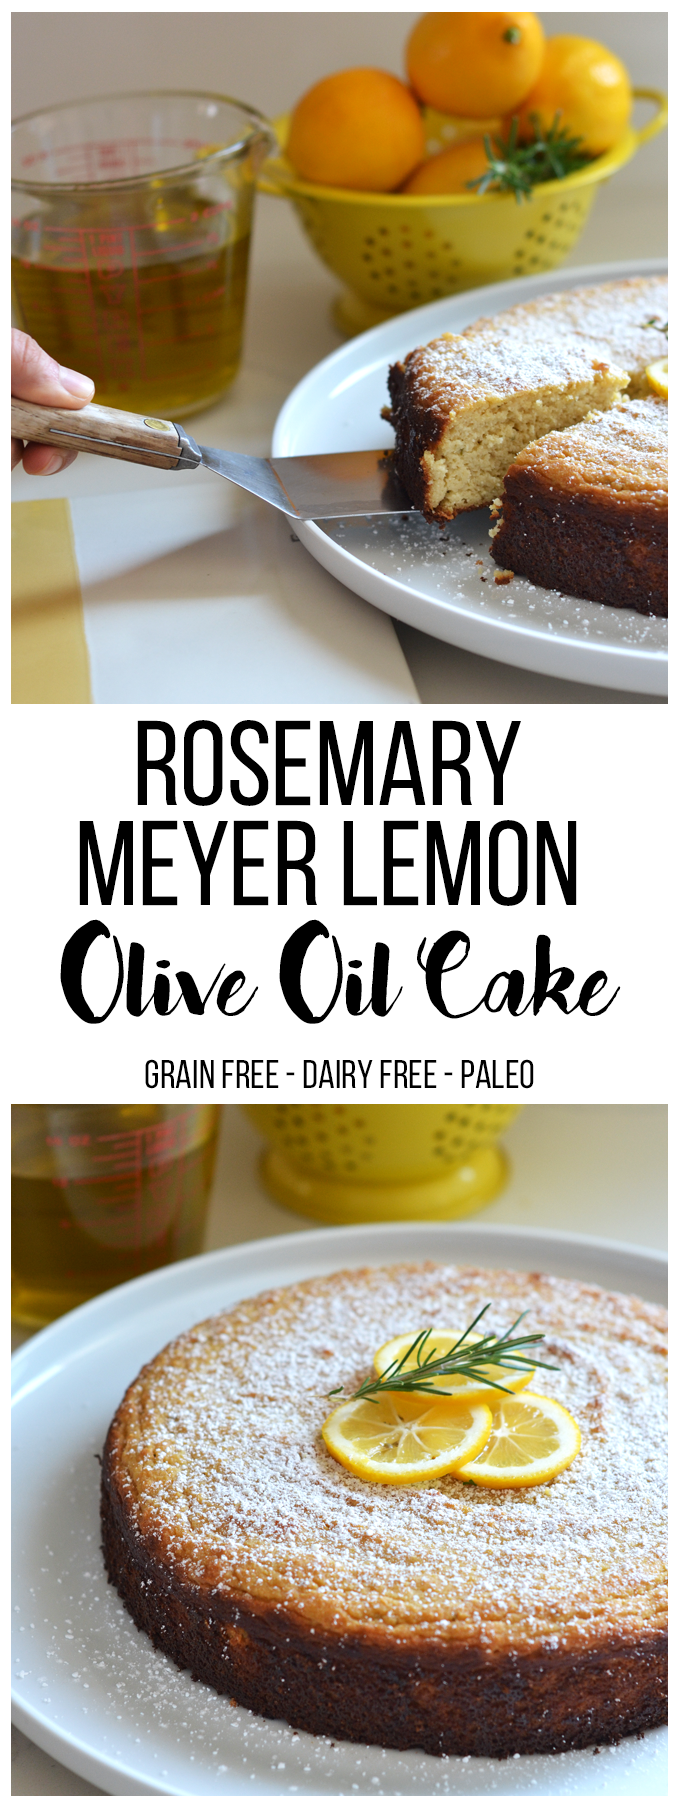  to ciasto Rosemary Meyer Lemon Olive Oil jest bez ziarna, bez cukru rafinowanego i bez nabiału aka - Paleo! Ma taki wspaniały smak i jest idealny na każdą imprezę lub brunch!